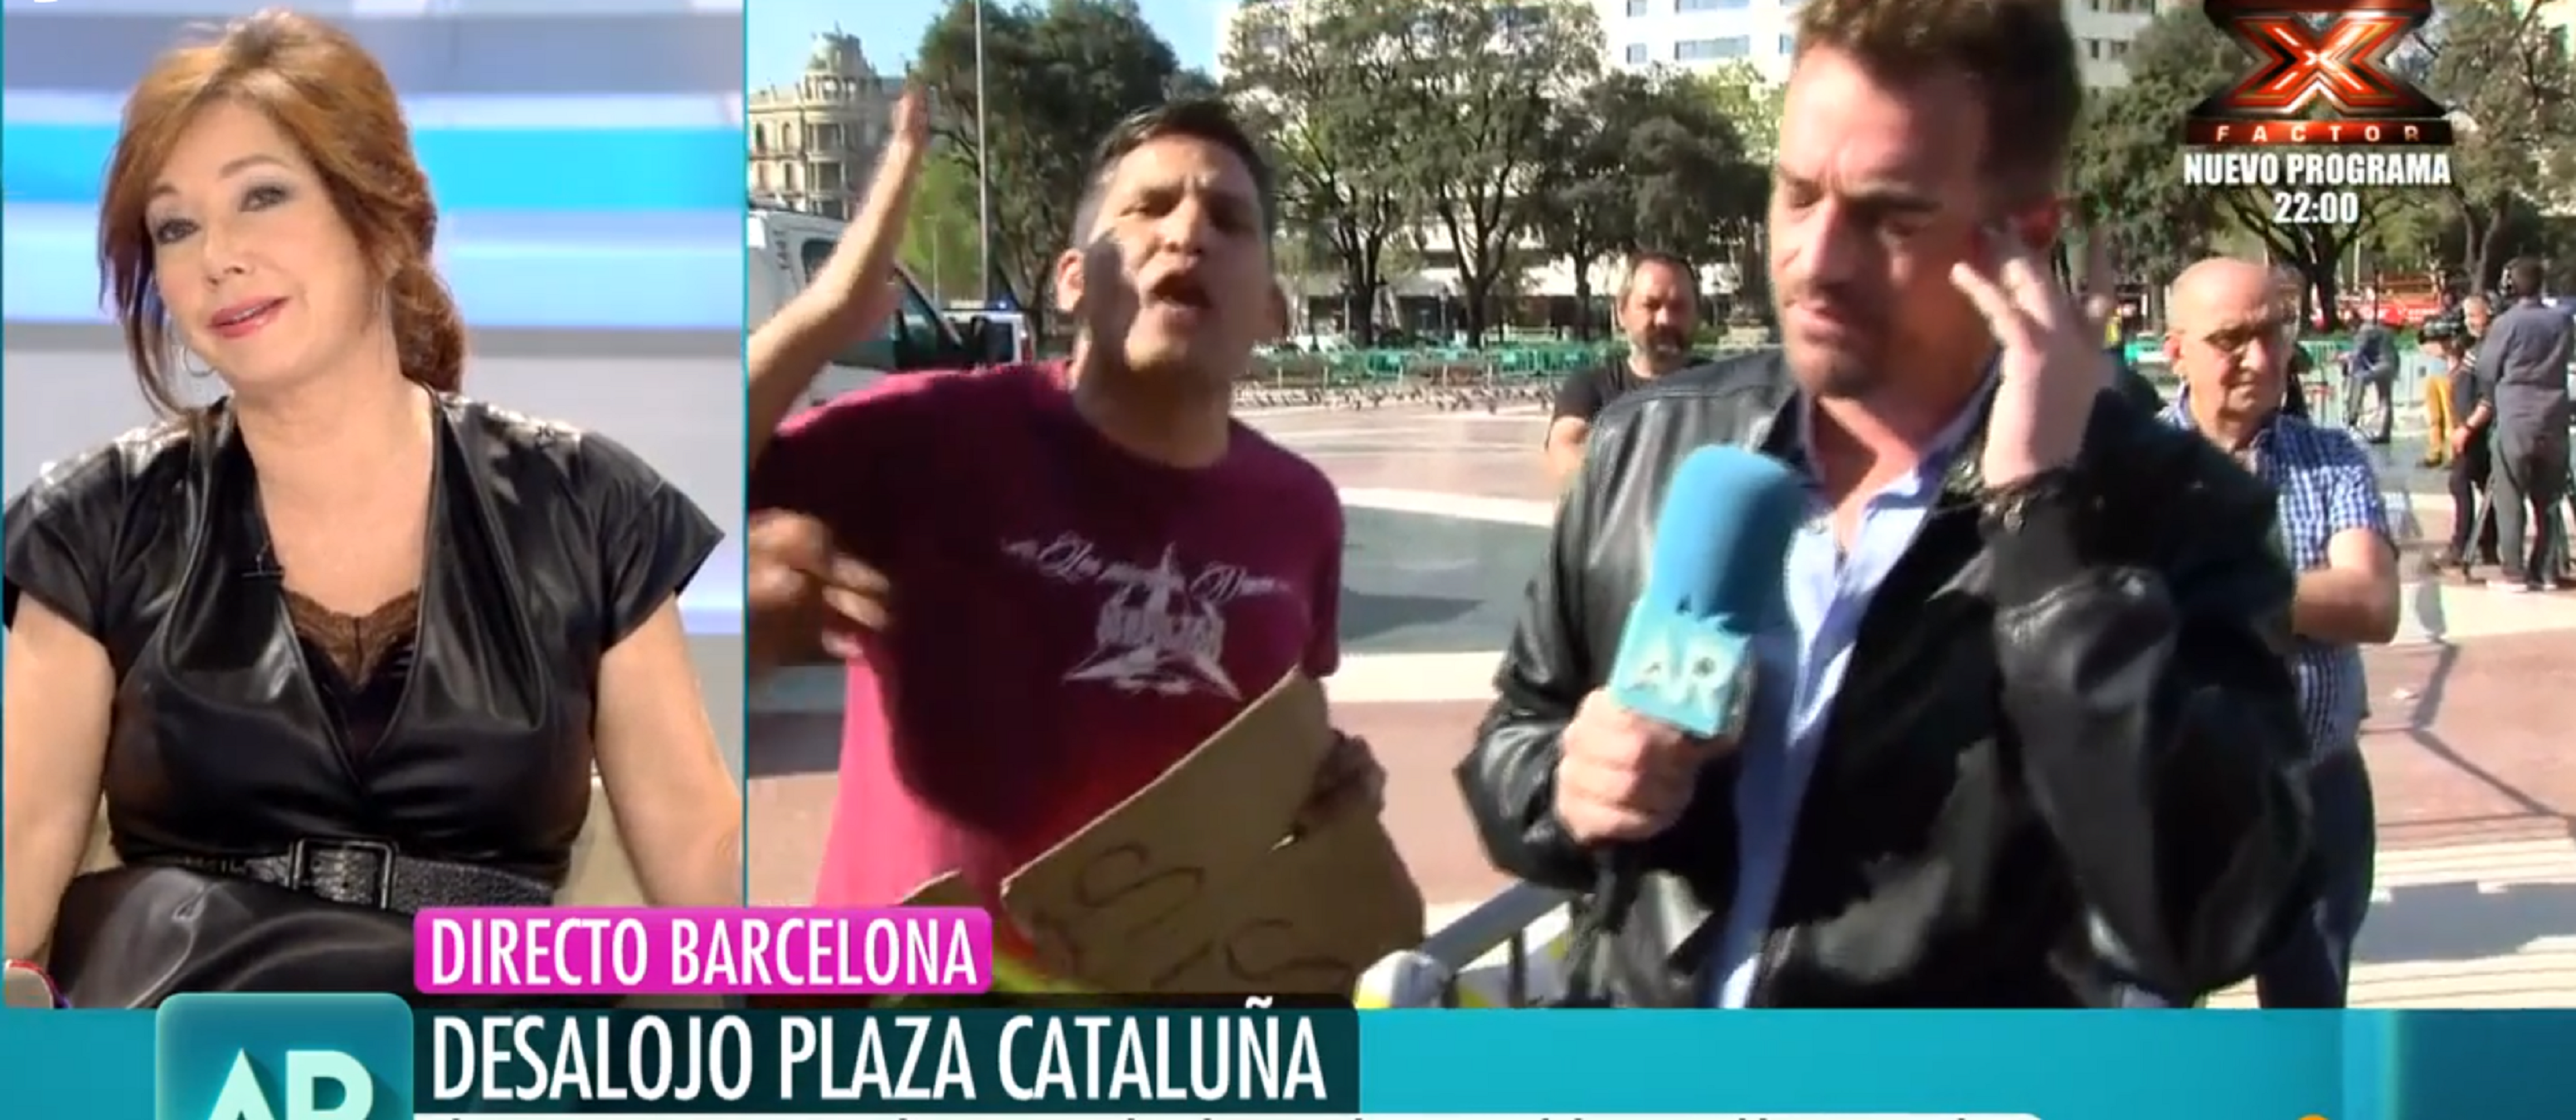 Un acampat de la plaça Catalunya a Ana Rosa: "¡Eres fascista y una ricachona!"